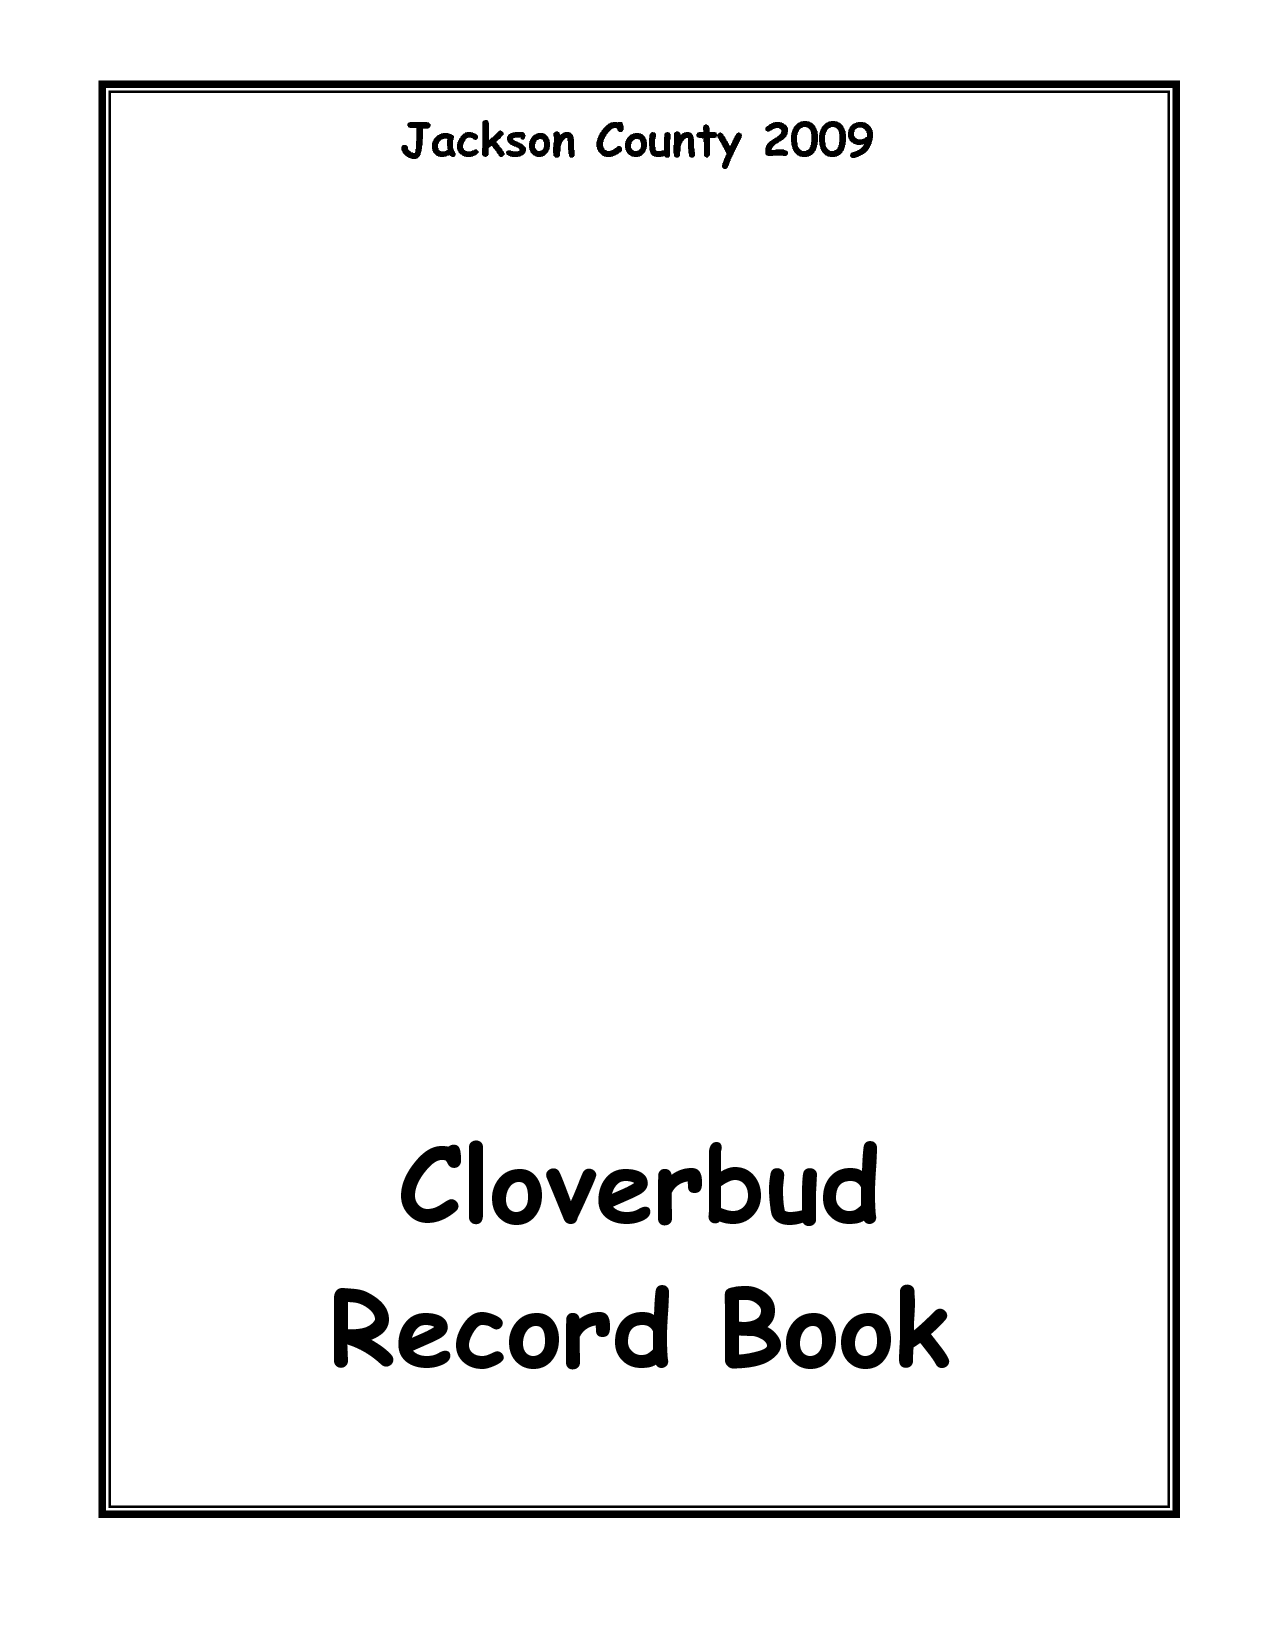 Cloverbud Clip Art Http   Www Docstoc Com Docs 11032050 Cloverbud